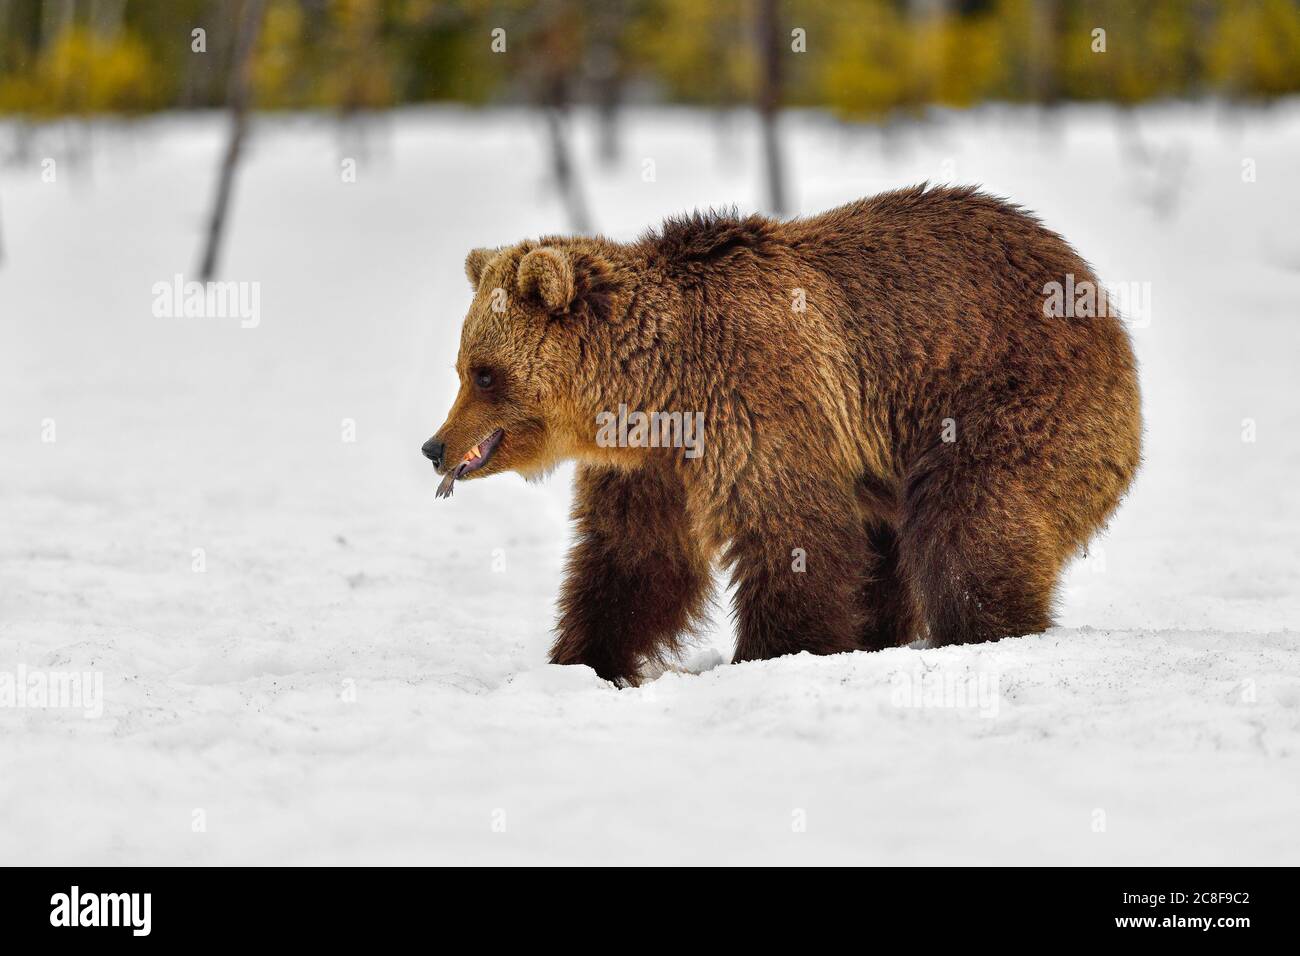 Les jeunes ours bruns ont de la nourriture coincée dans la bouche Banque D'Images